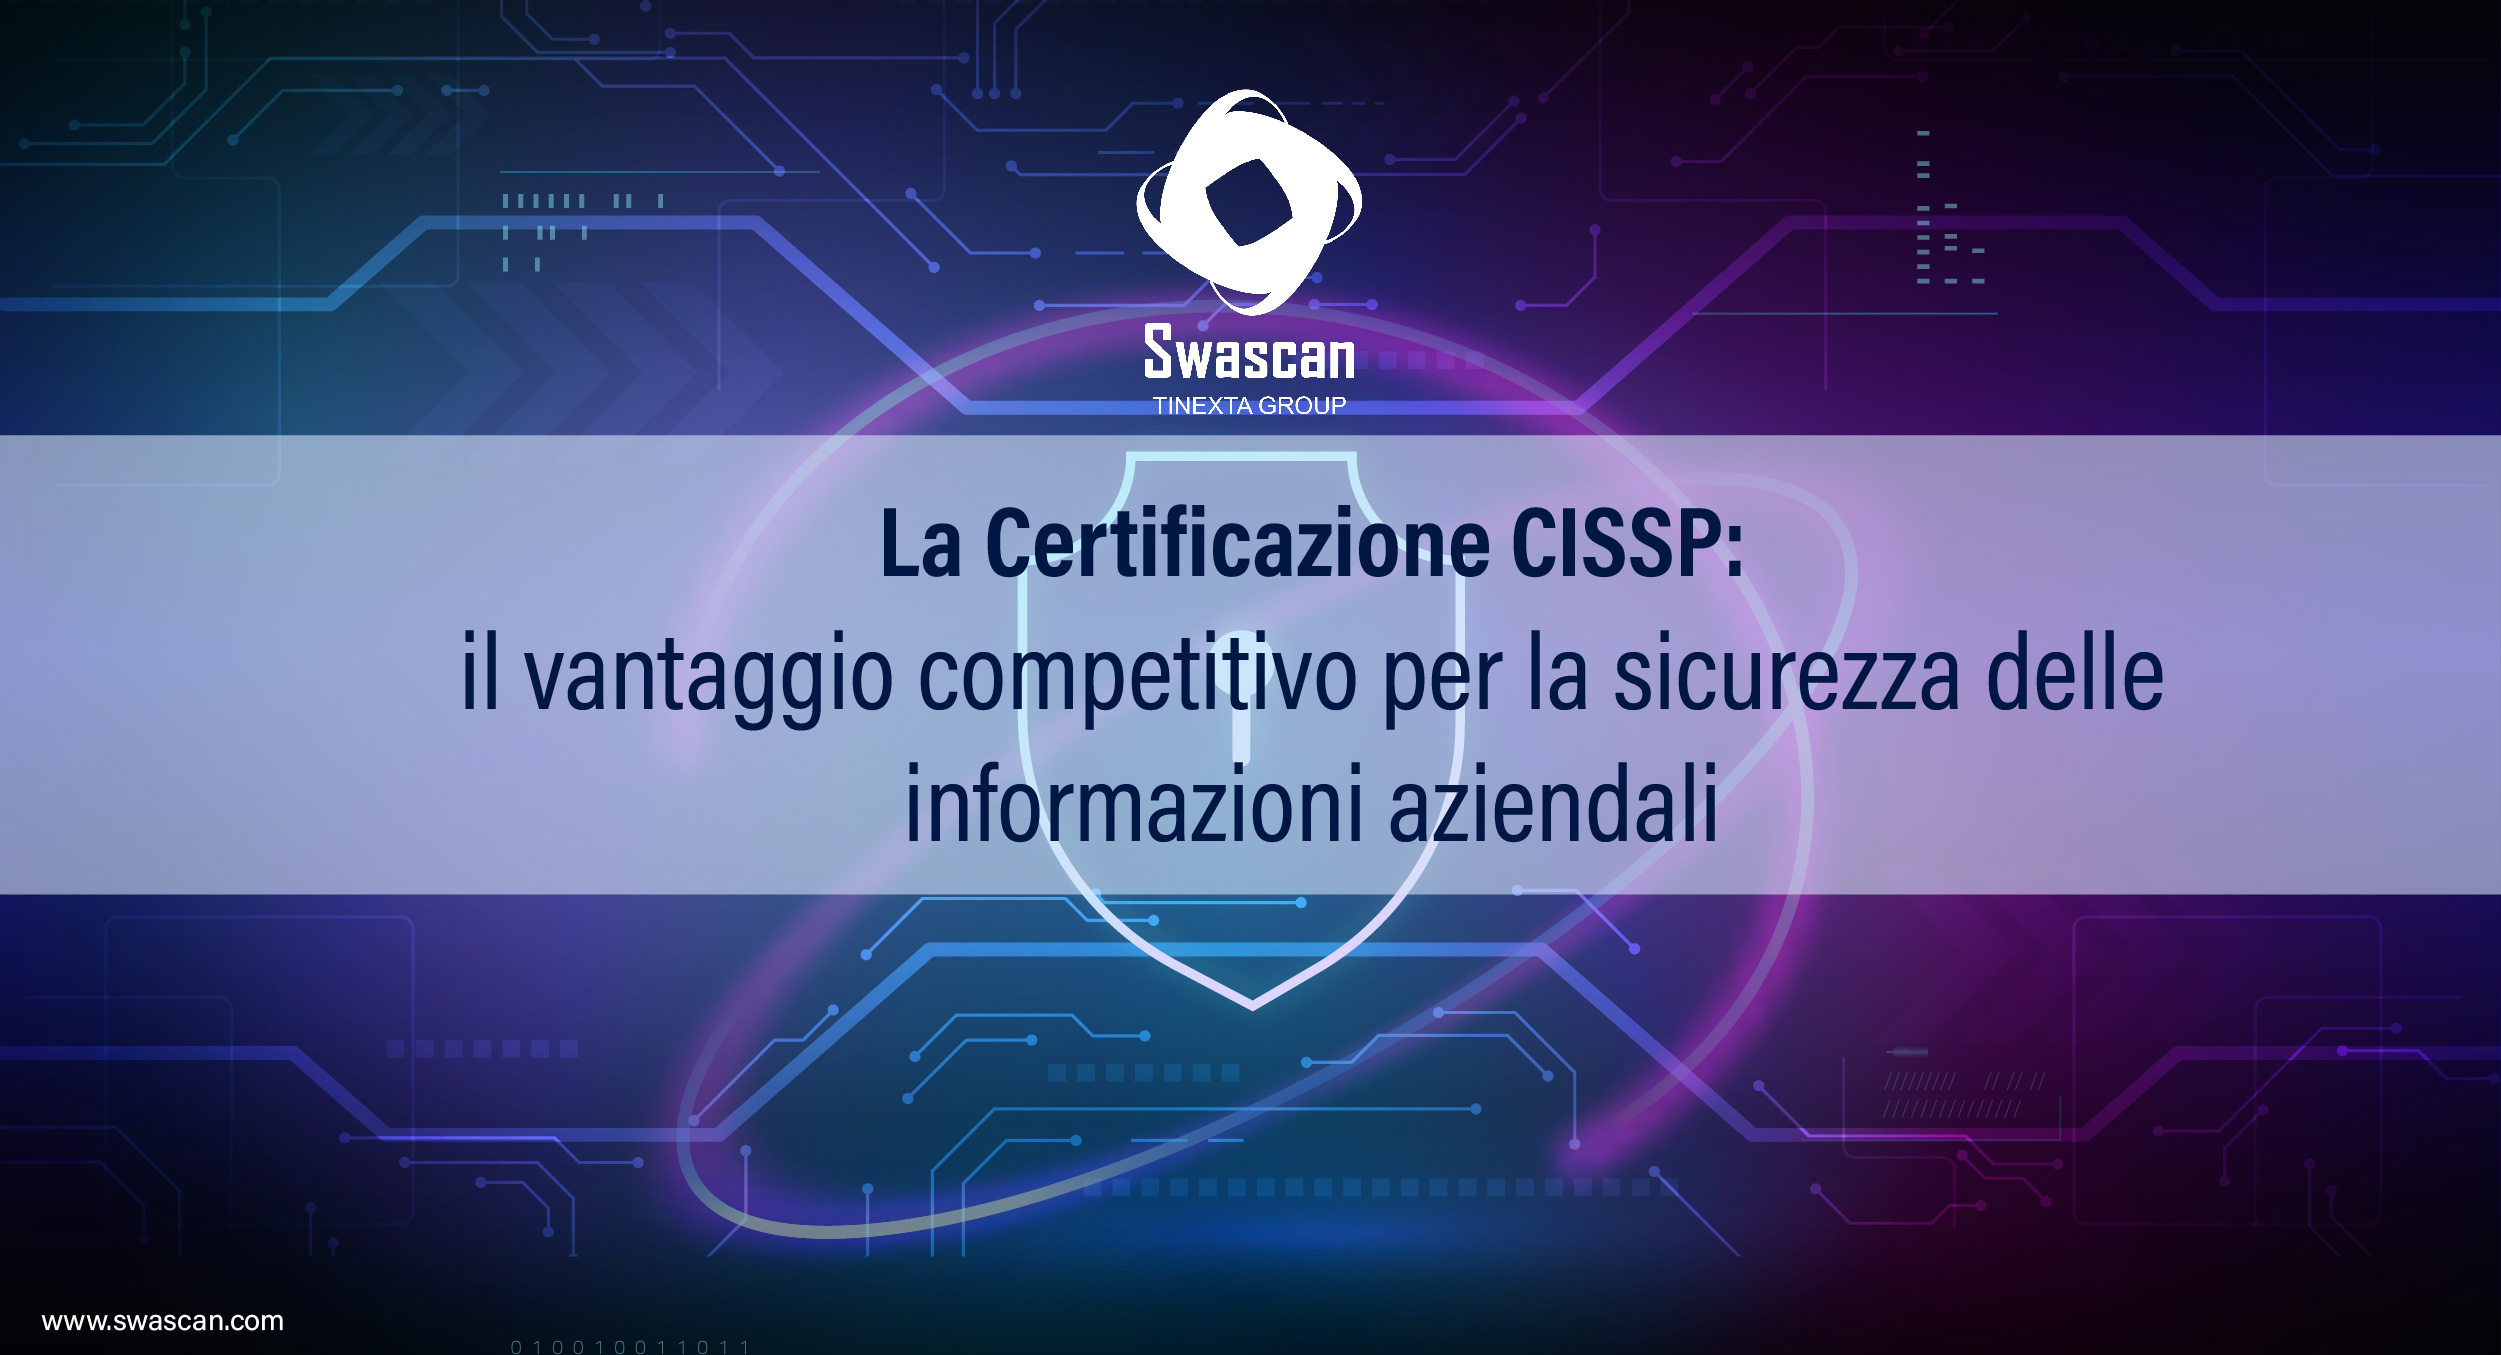 La Certificazione CISSP: un vantaggio competitivo